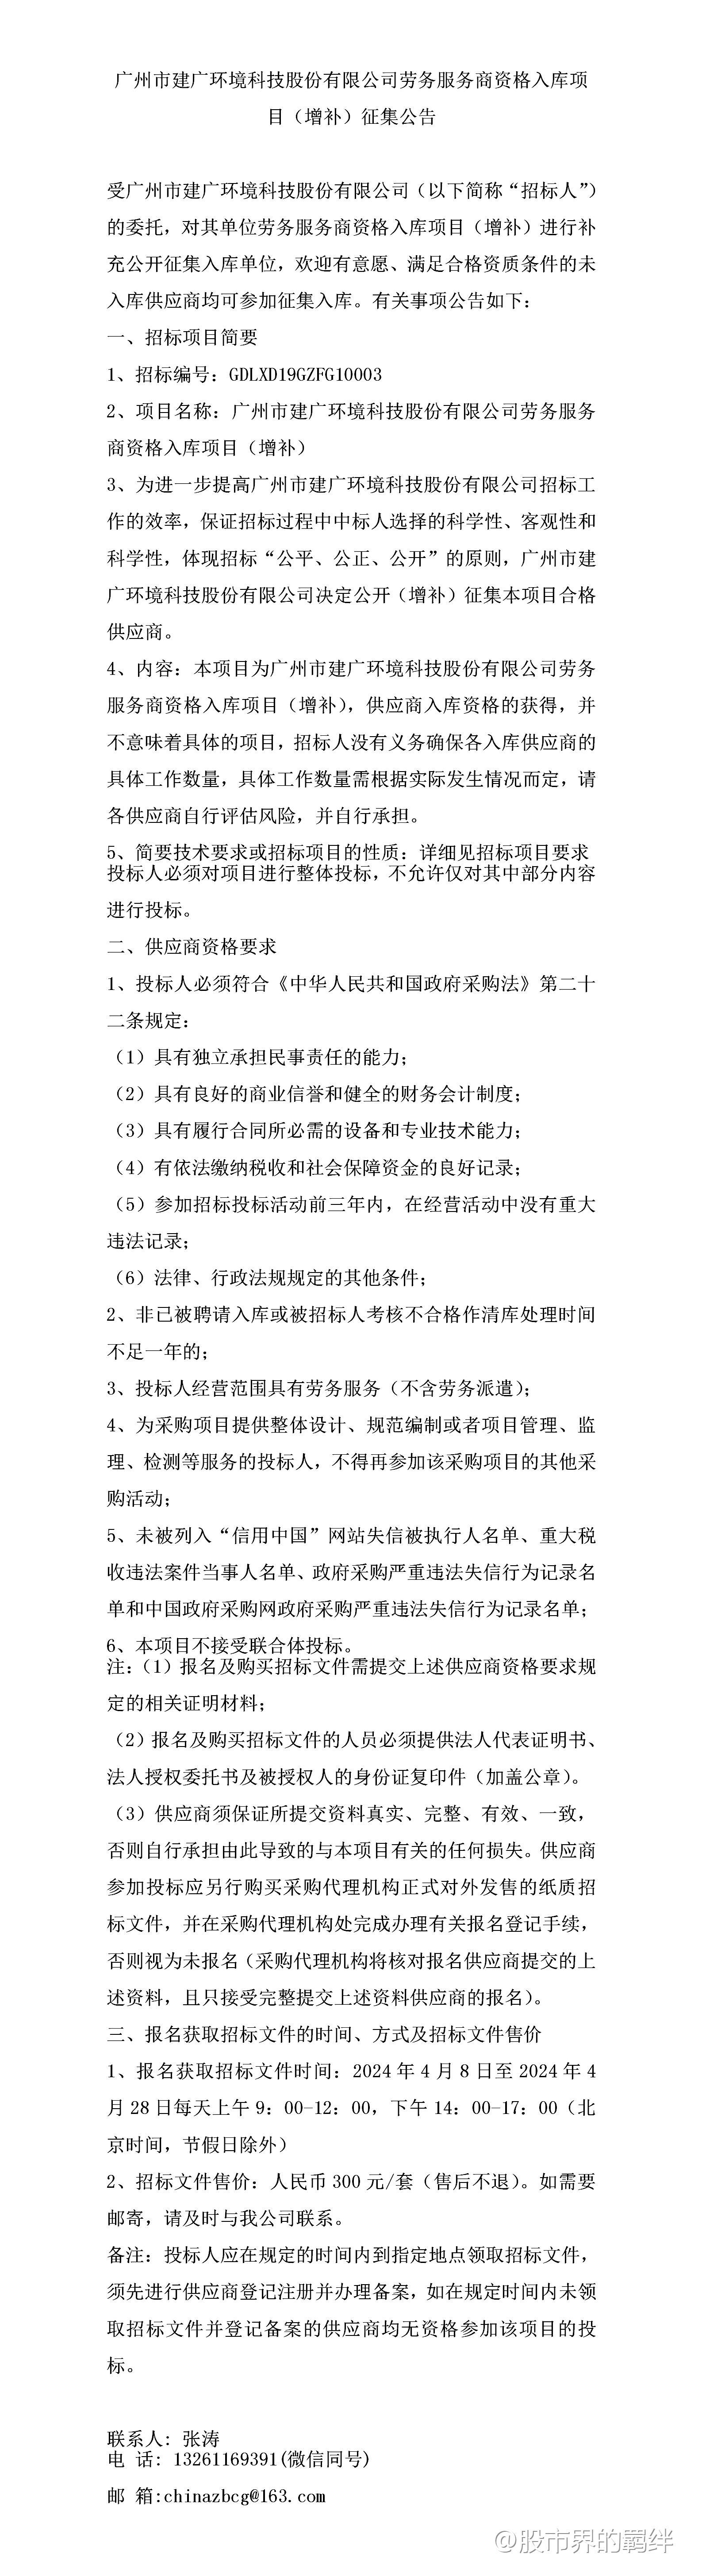 广州市建广环境科技股份有限公司劳务服务商资格入库项目（增补）征集